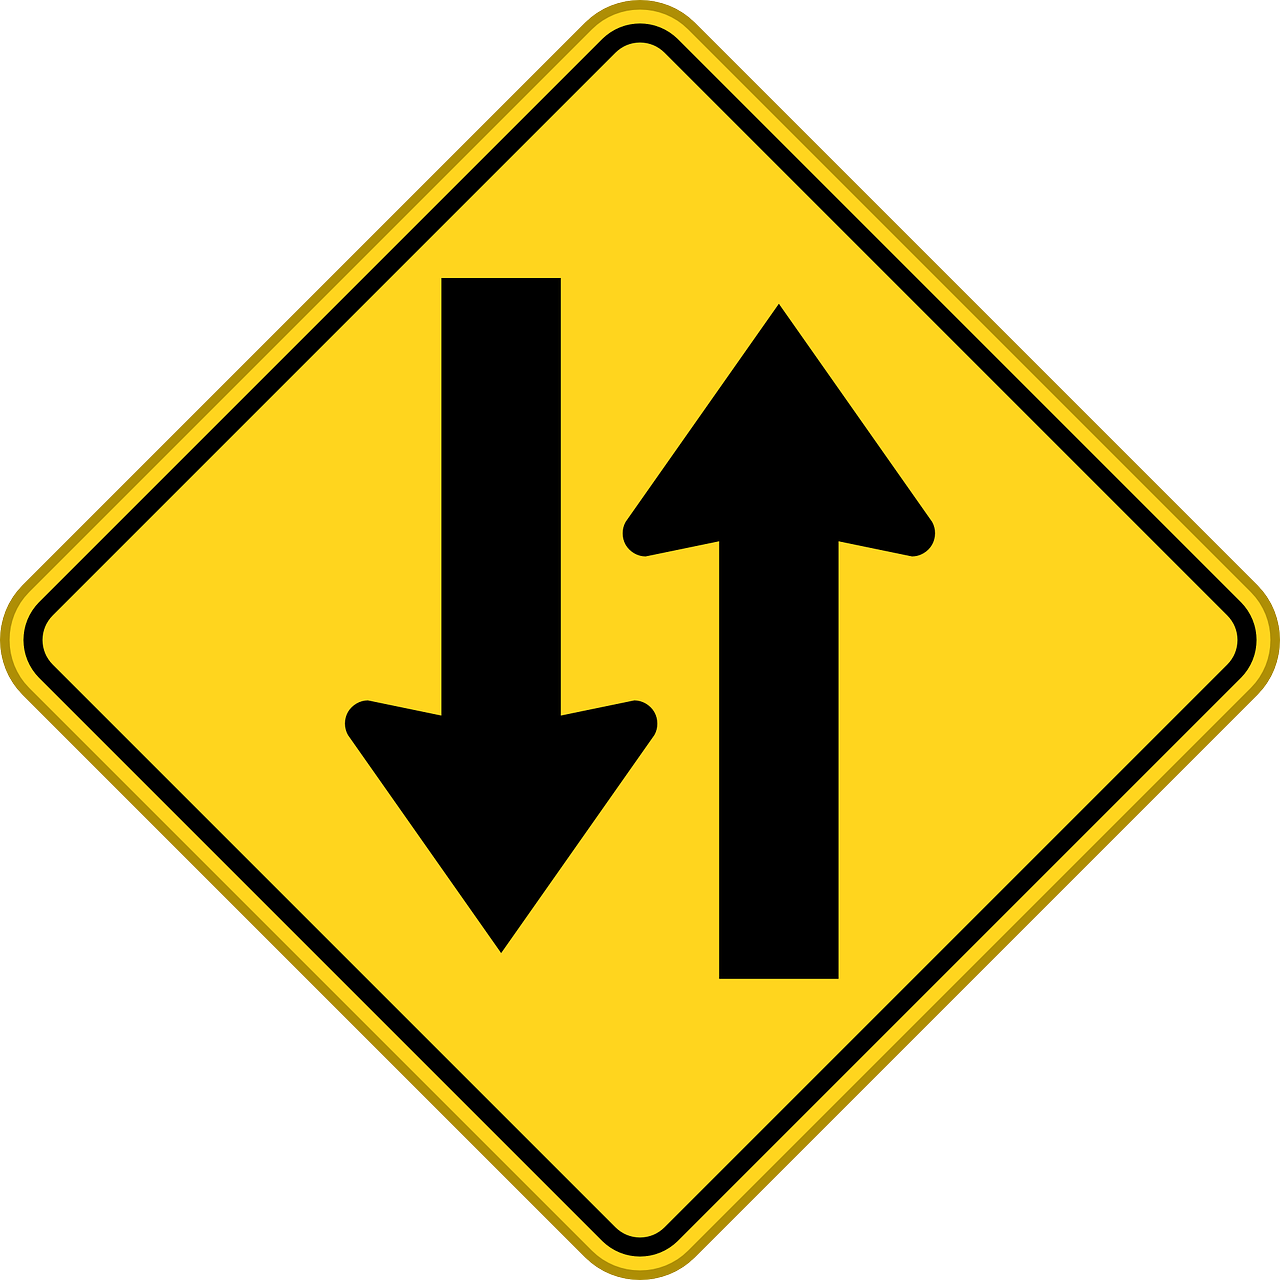 two-way traffic, two-way road, opposing traffic